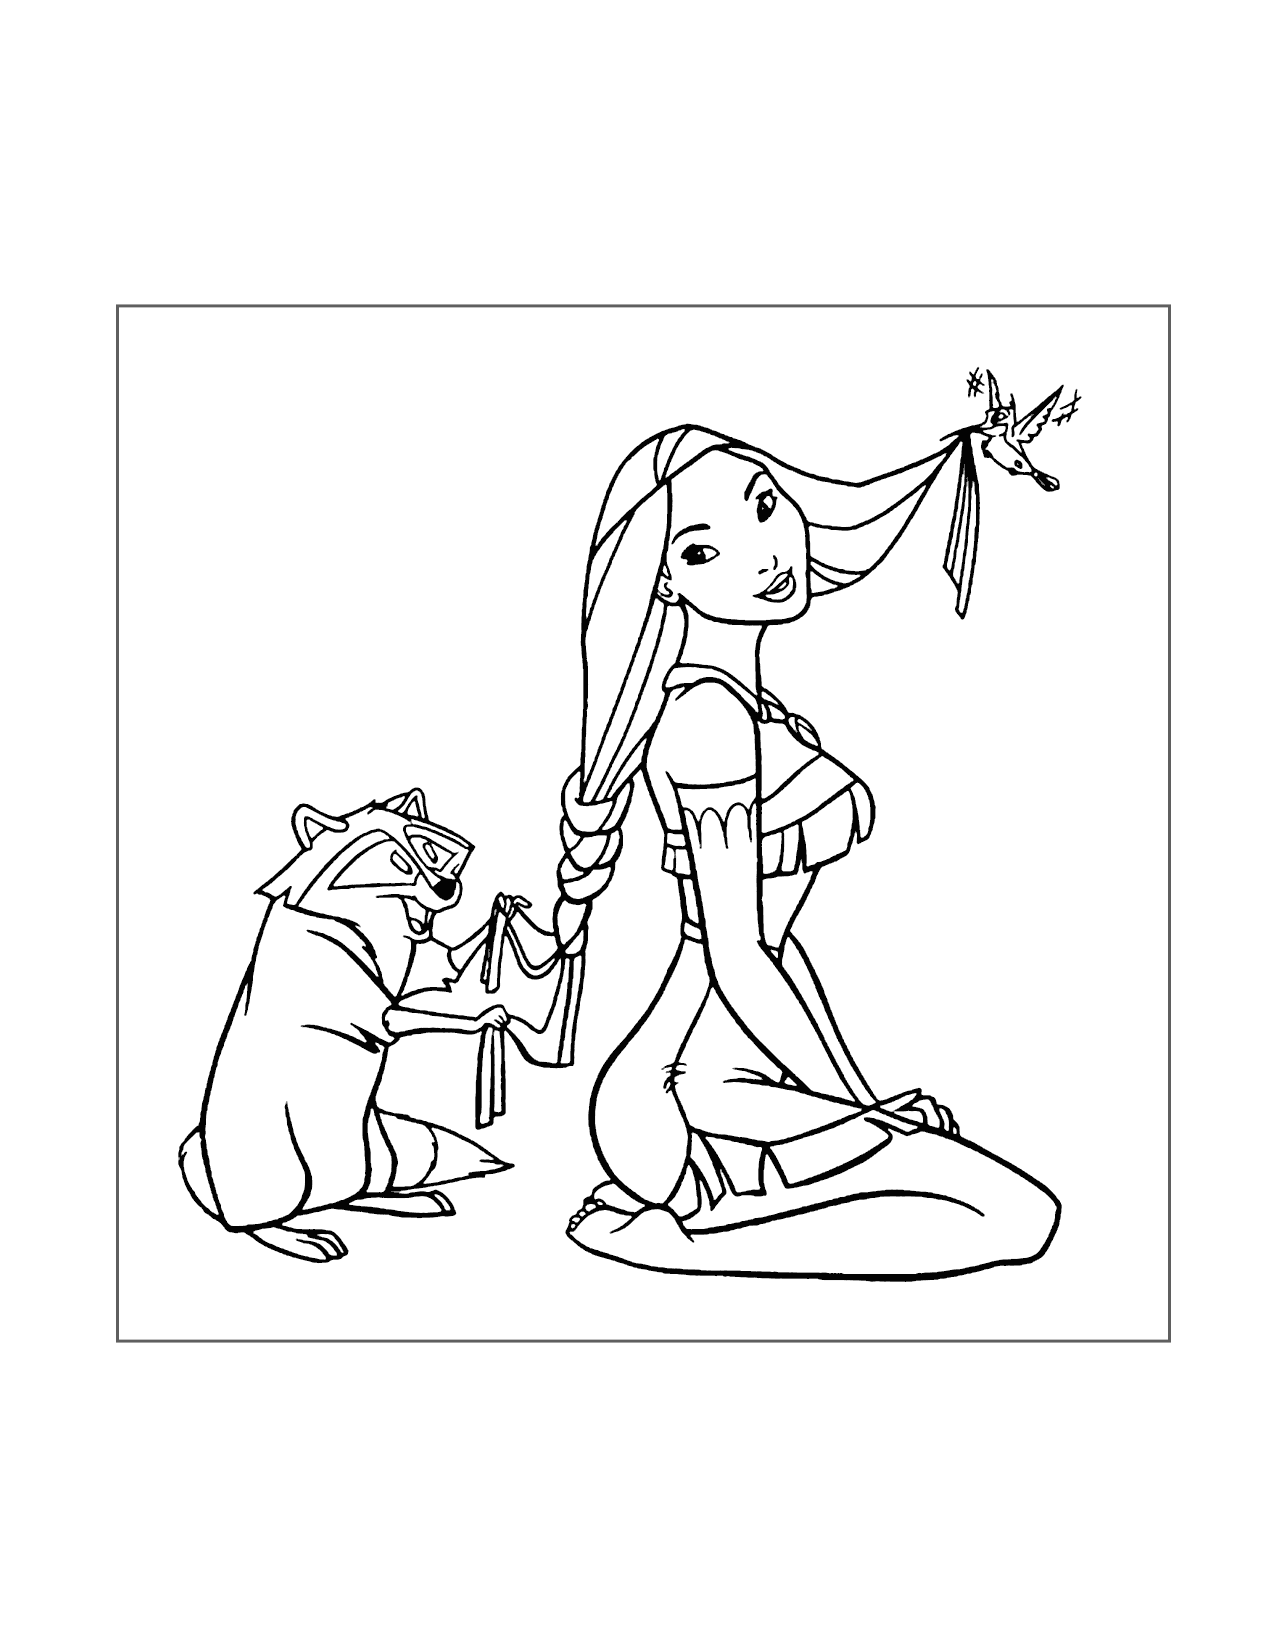 Meeko And Flit Help Pocahontas Coloring Page